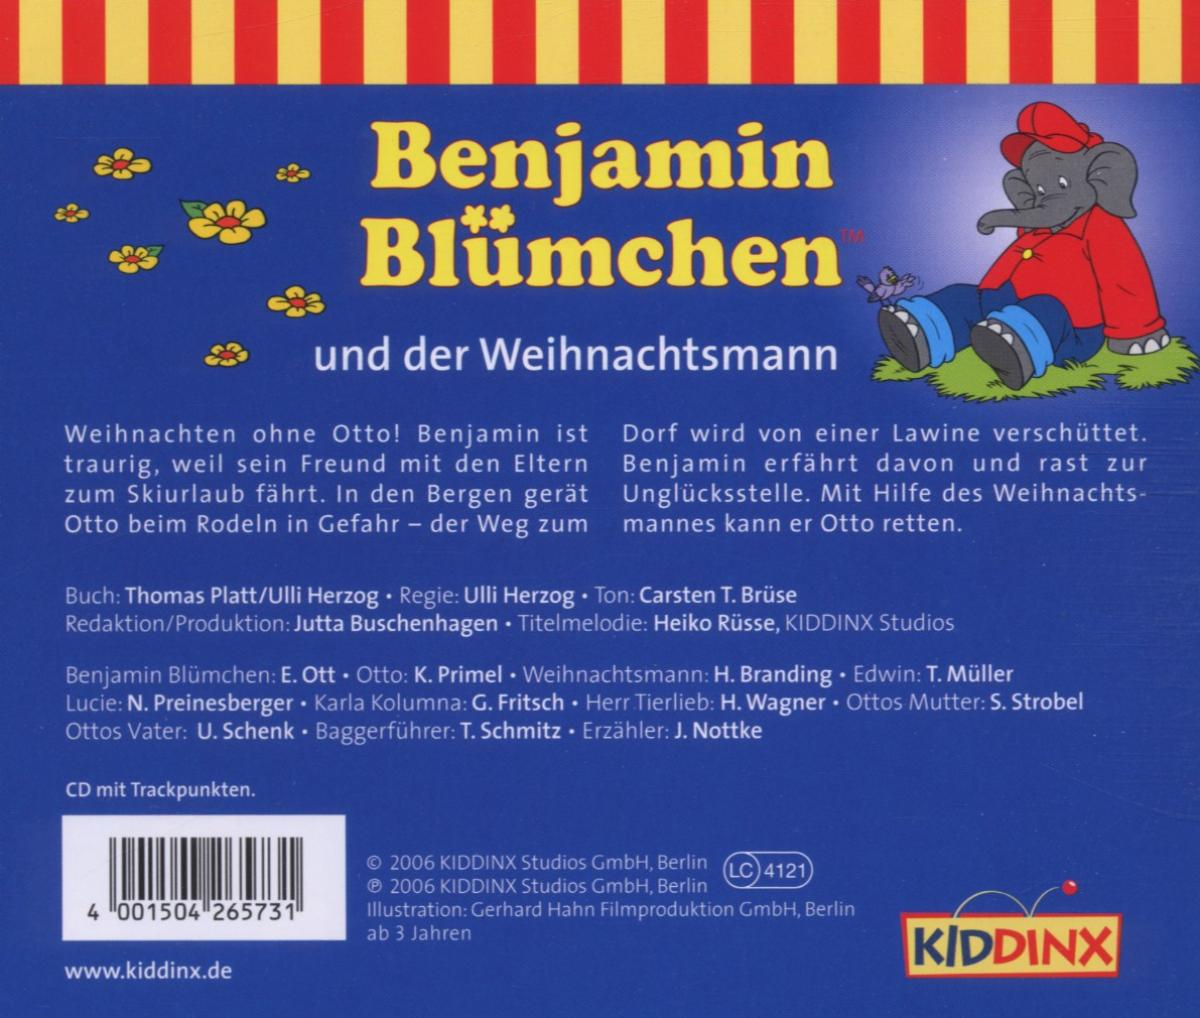 Folge (CD) Benjamin Der Blümchen Weihnachtsmann 073:...und - -